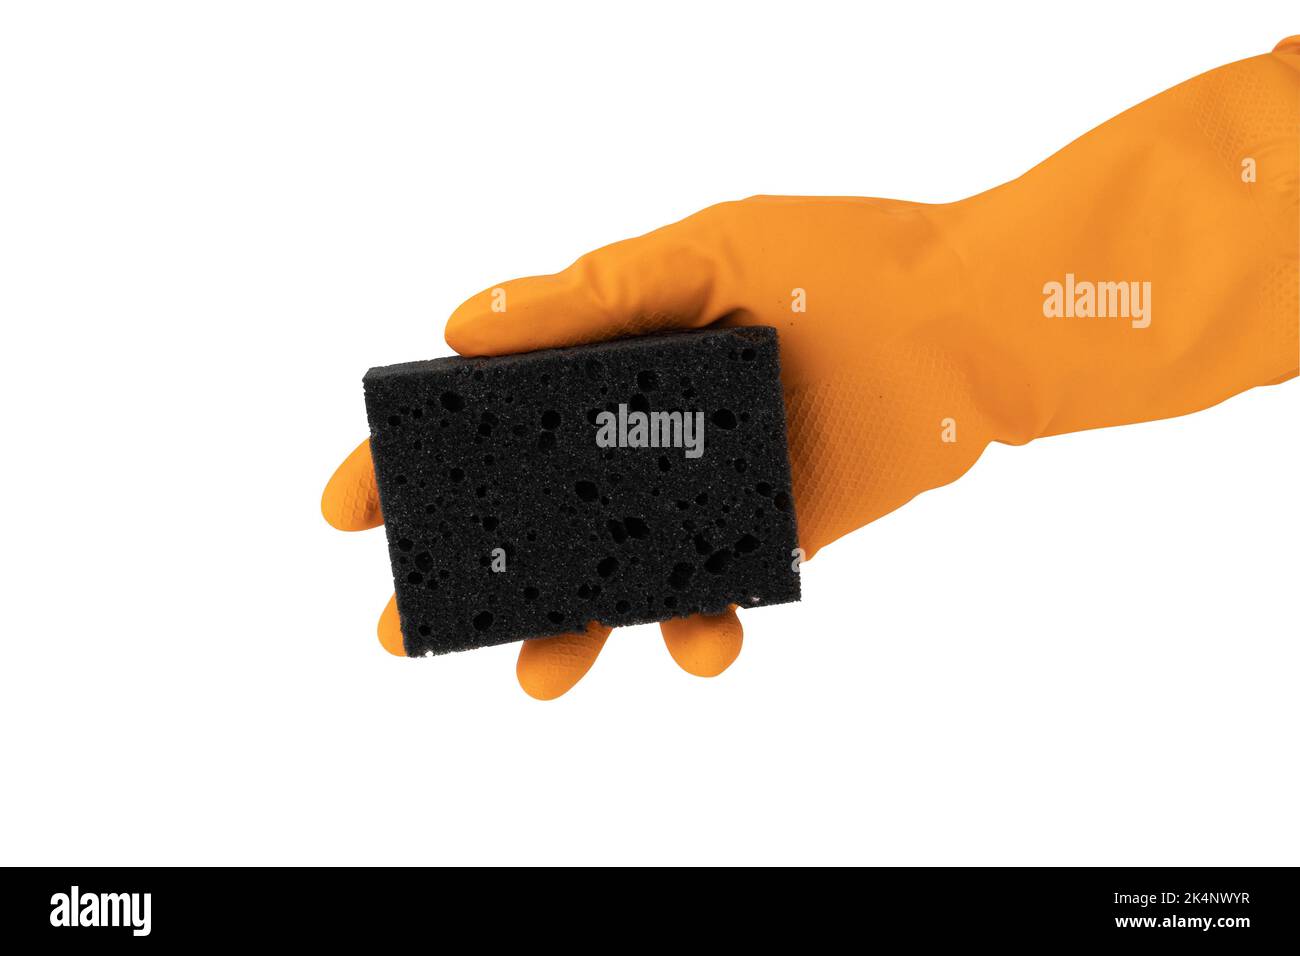 la mano en guante anaranjado sostiene la esponja para el deshwashing aislado sobre fondo blanco, copia de primer plano Foto de stock